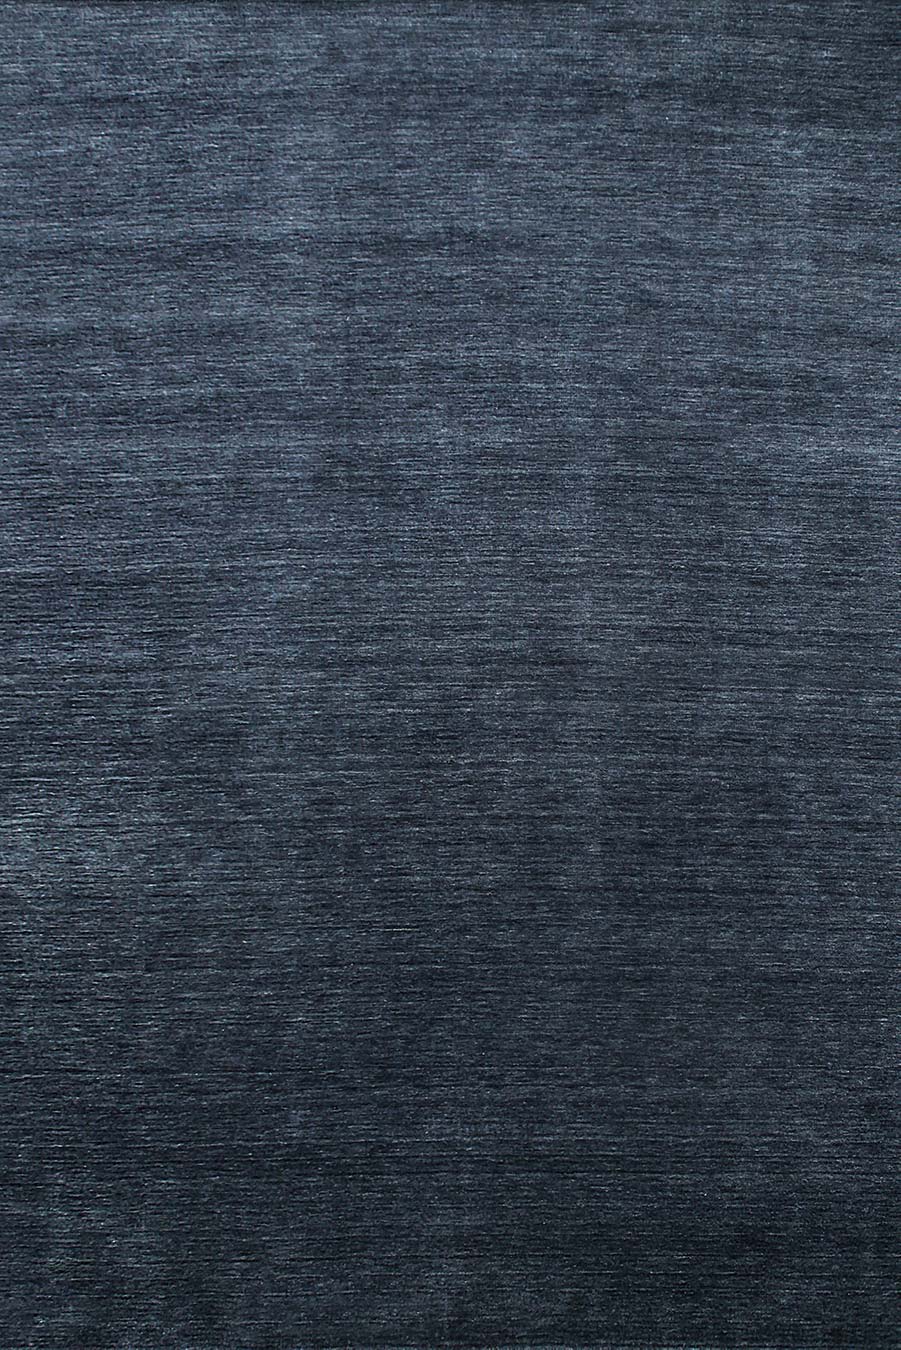 Overhead view of textured Zen rug in navy blue colour